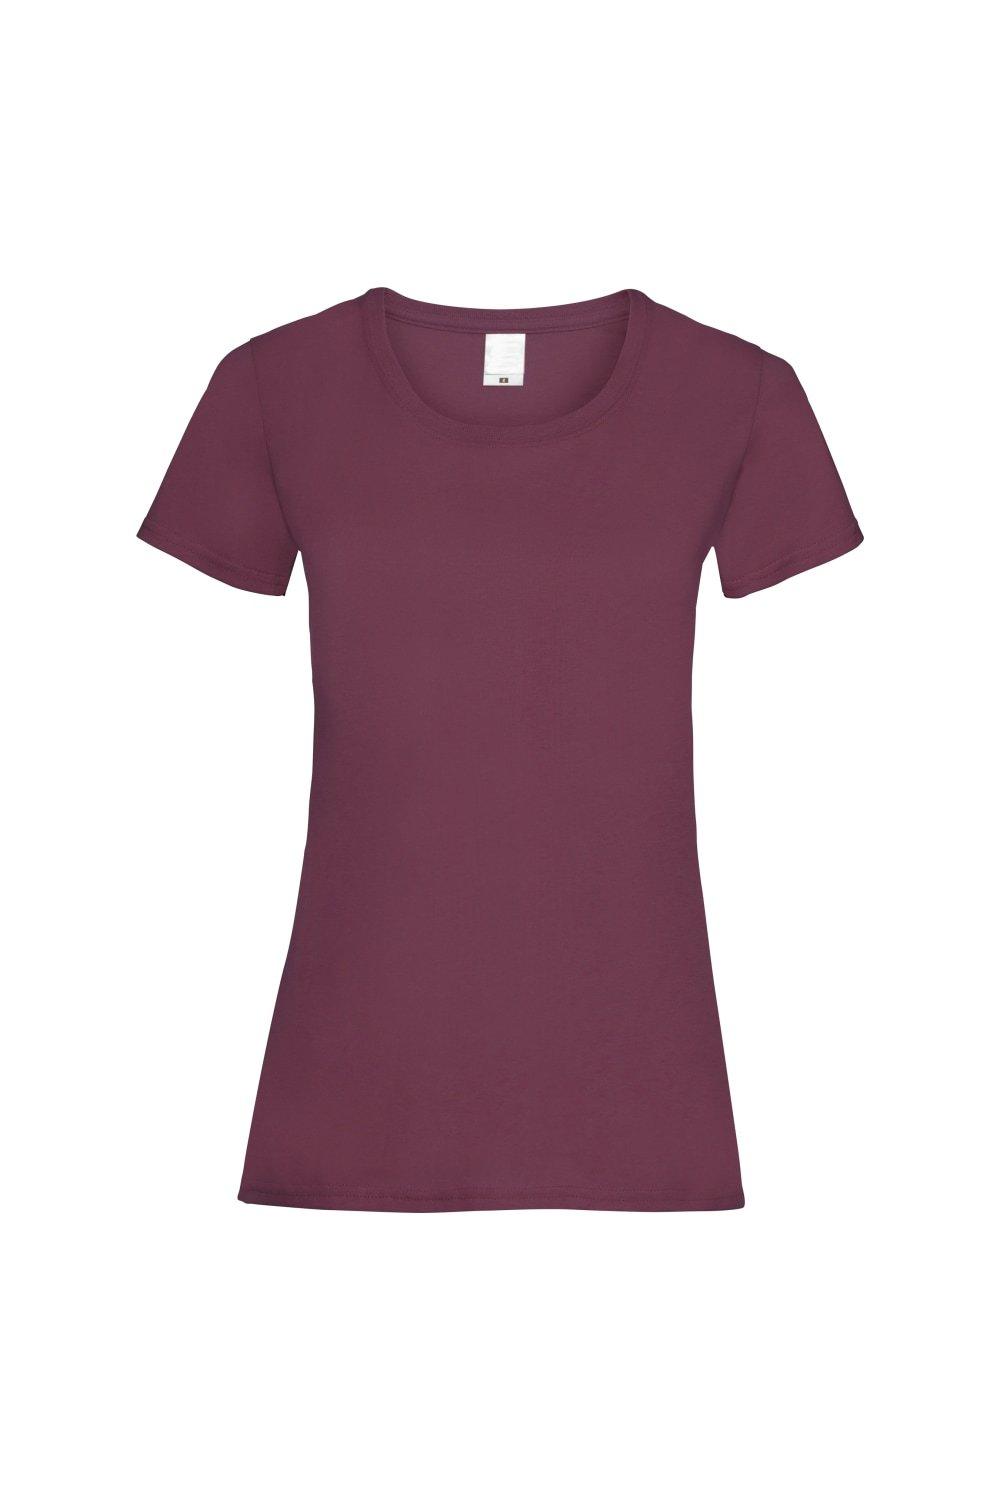 Повседневная футболка с короткими рукавами Value Universal Textiles, красный повседневная футболка value с длинным рукавом universal textiles белый